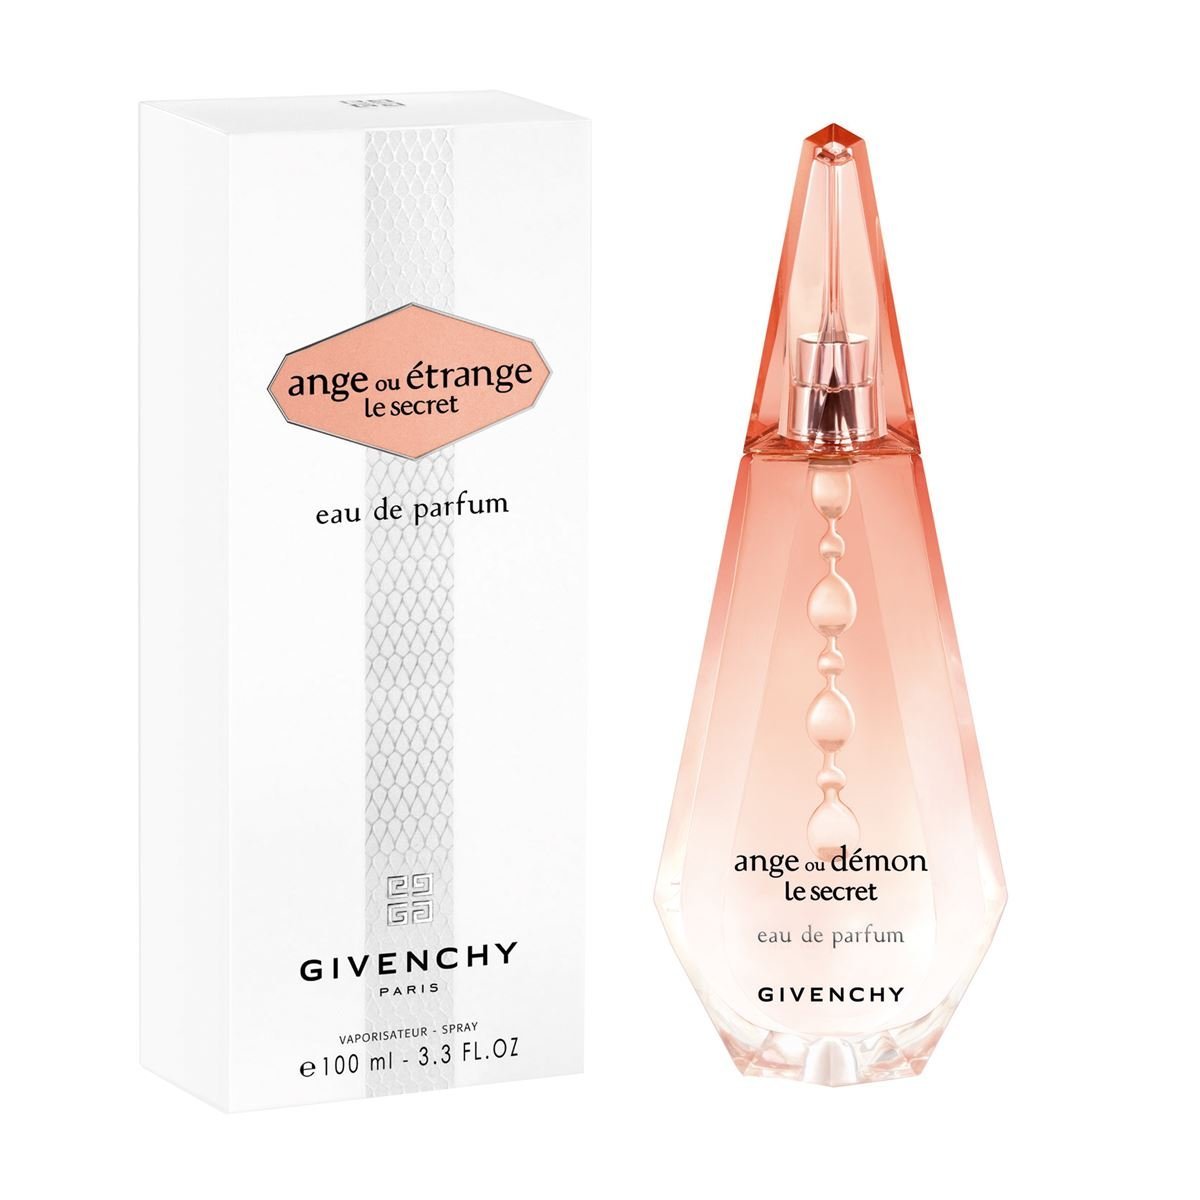 Купить Парфюмерная вода Givenchy, Givenchy Ange Ou Demon Le Secret Eau De Parfum 100ml, Франция